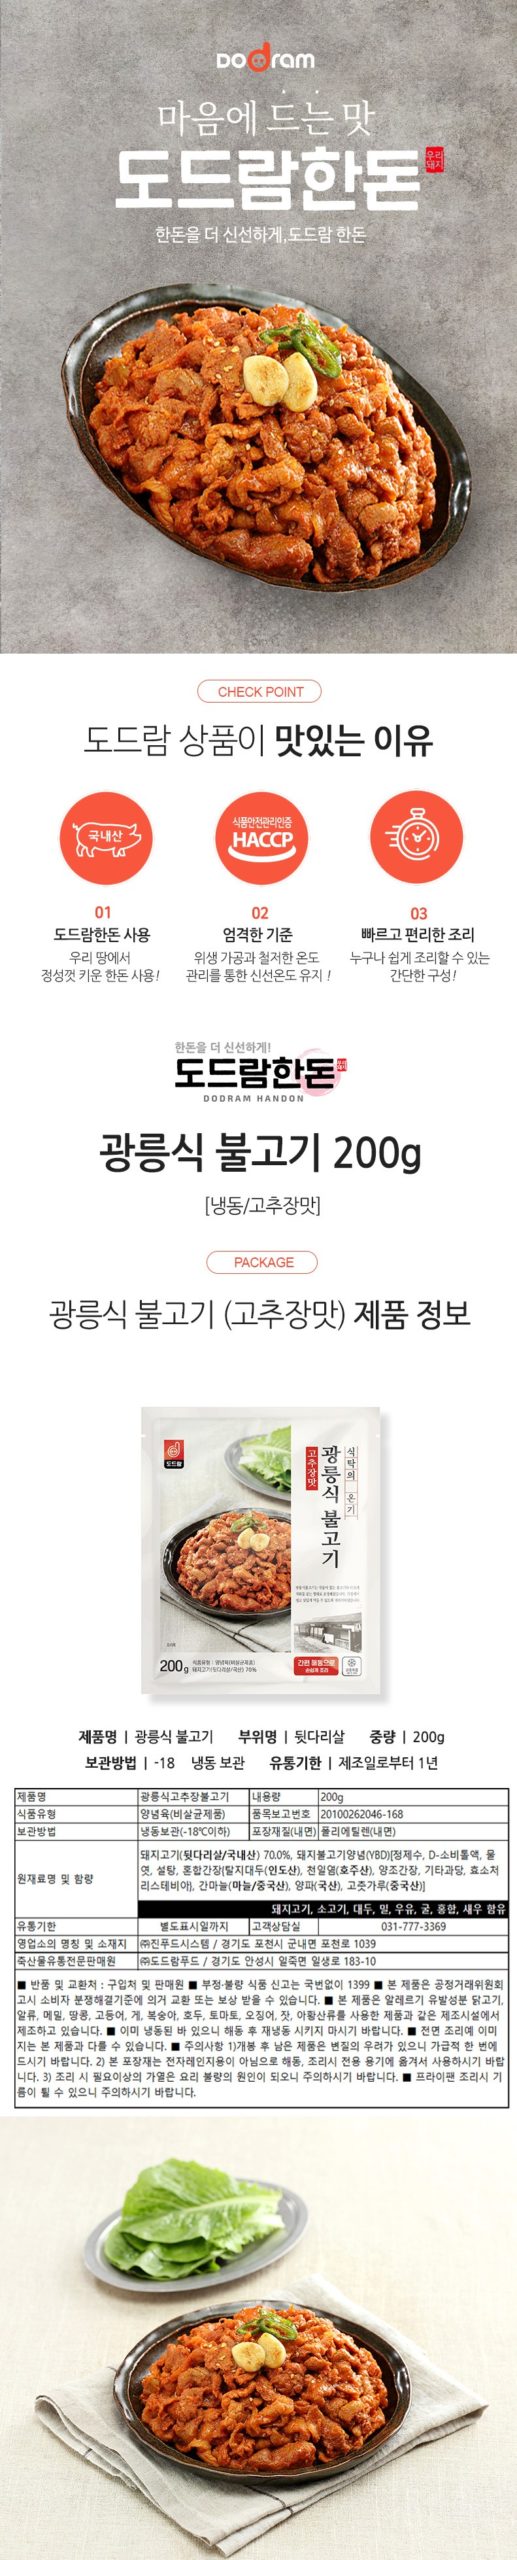 韓國食品-[도드람] 광릉식불고기 (고추장맛) 200g